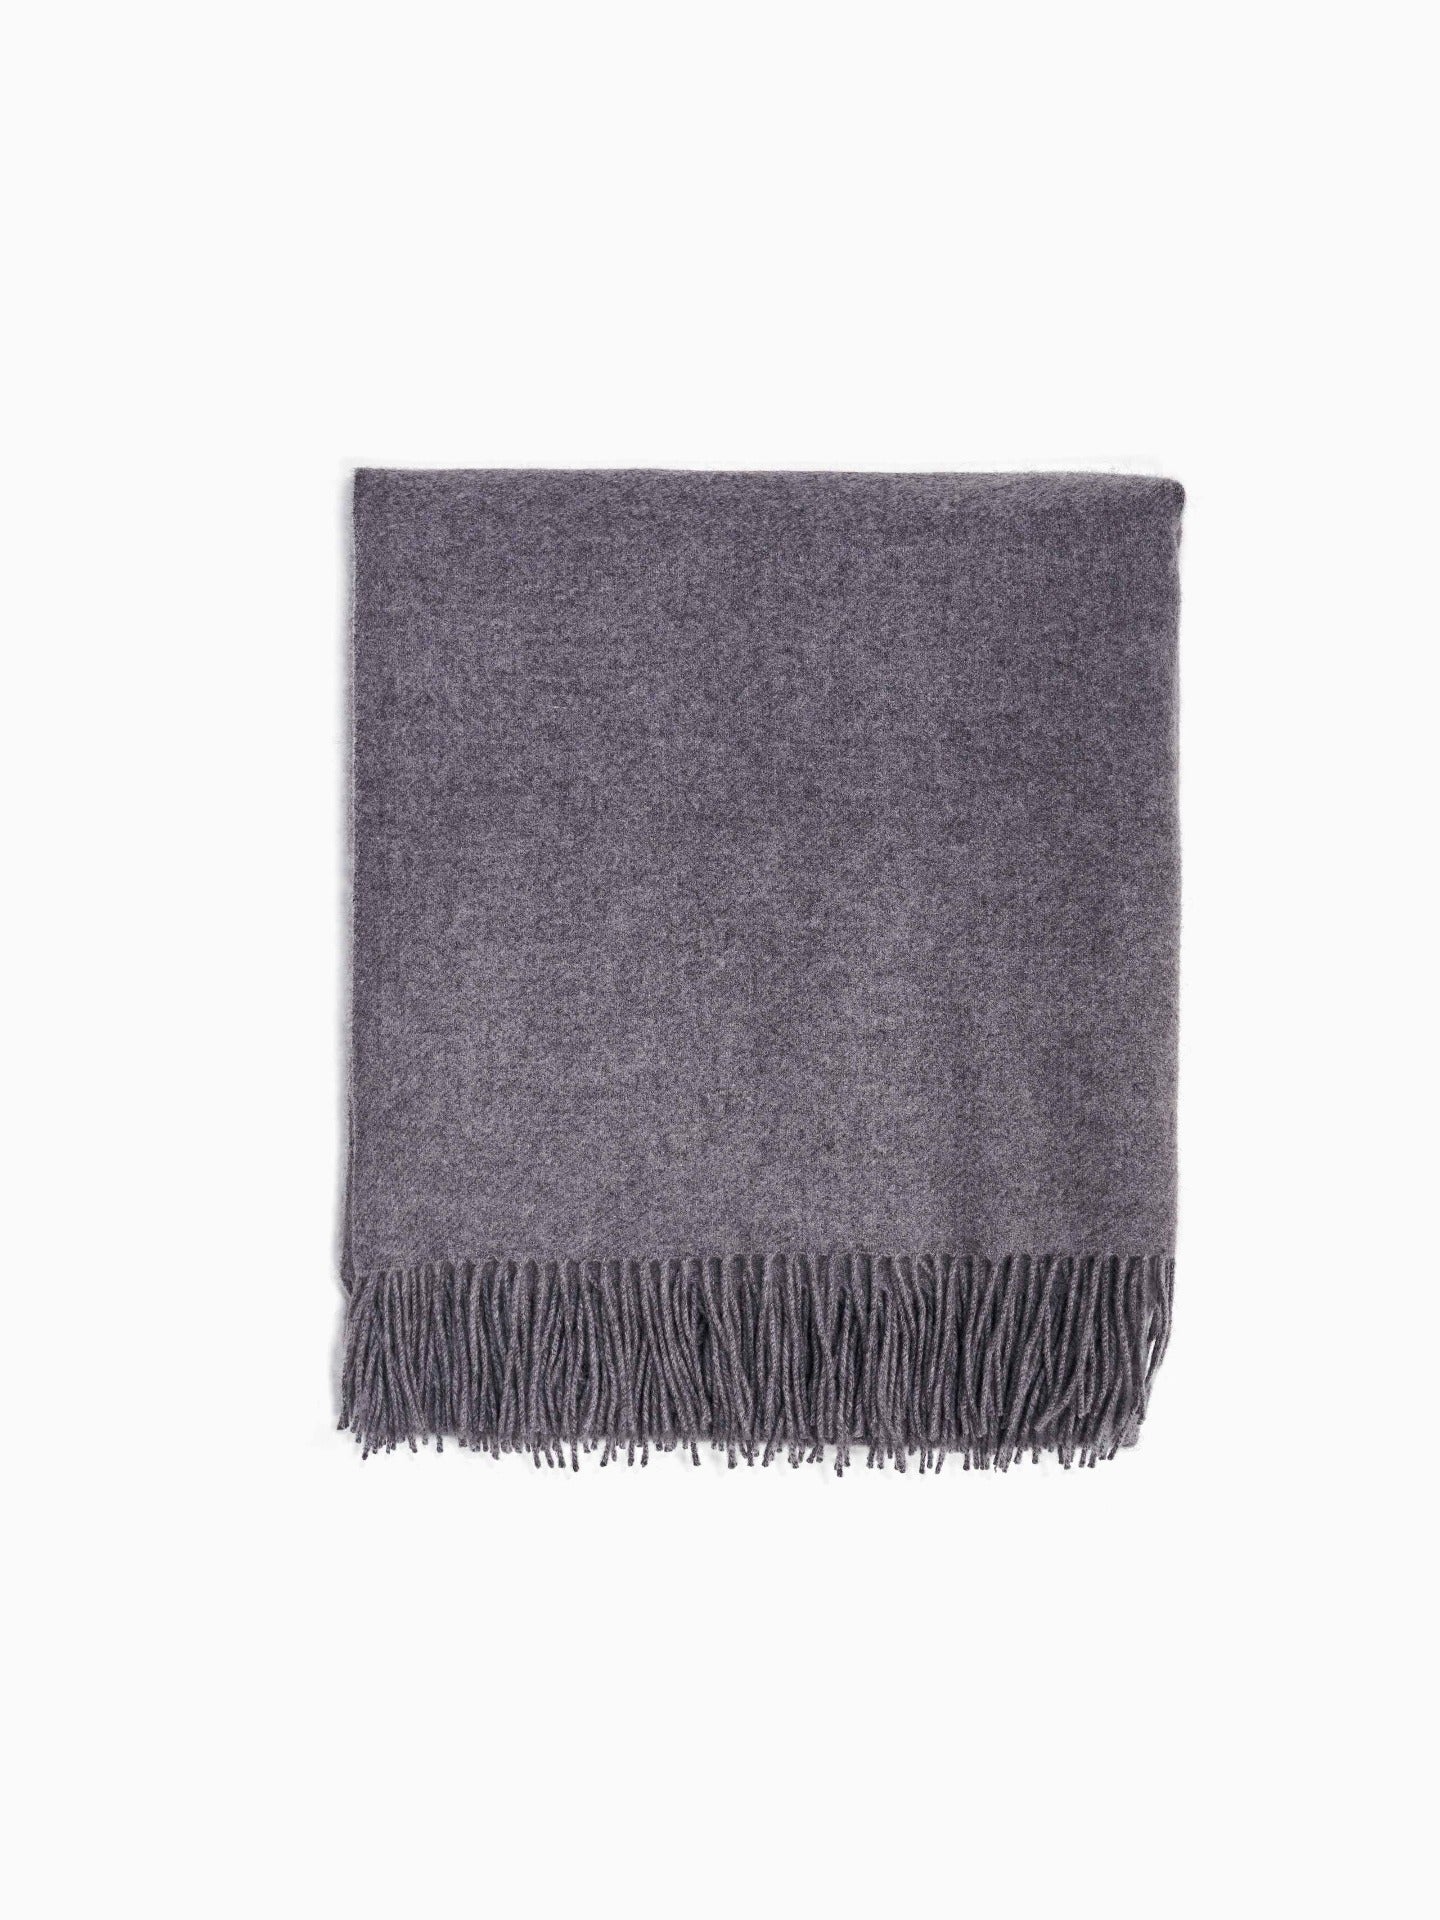 Cashmere Medium Blanket With Fringe Gray - Gobi Cashmere